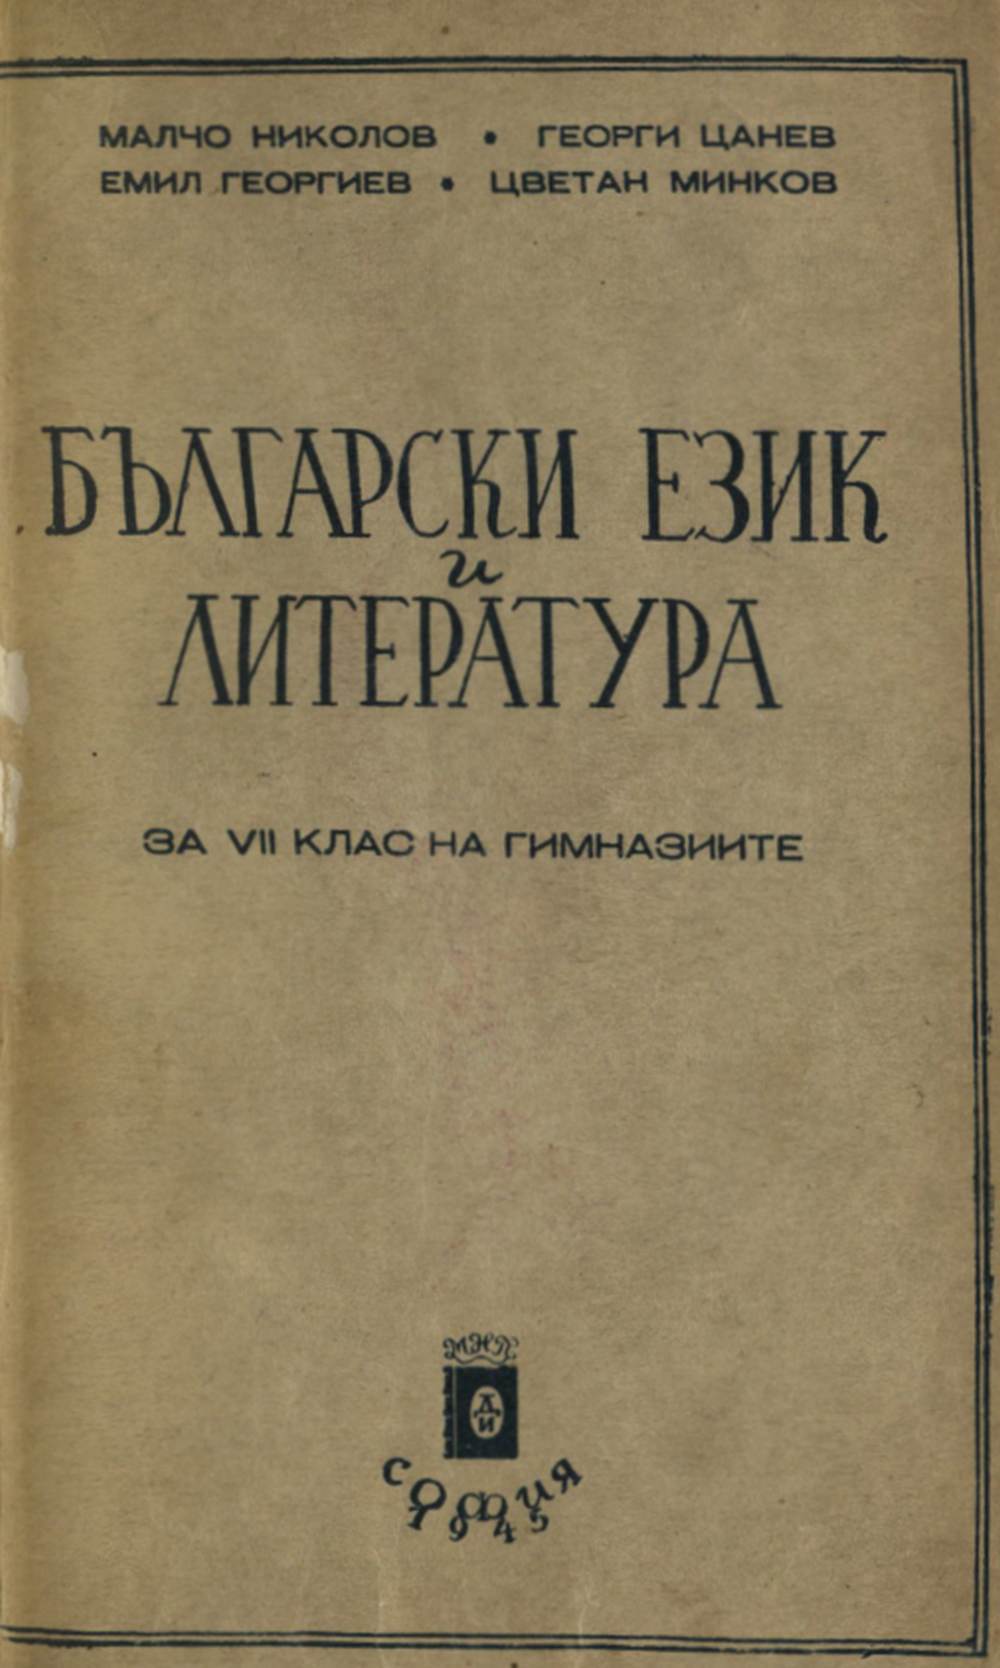 Български език и литература за VII клас на гимназиите